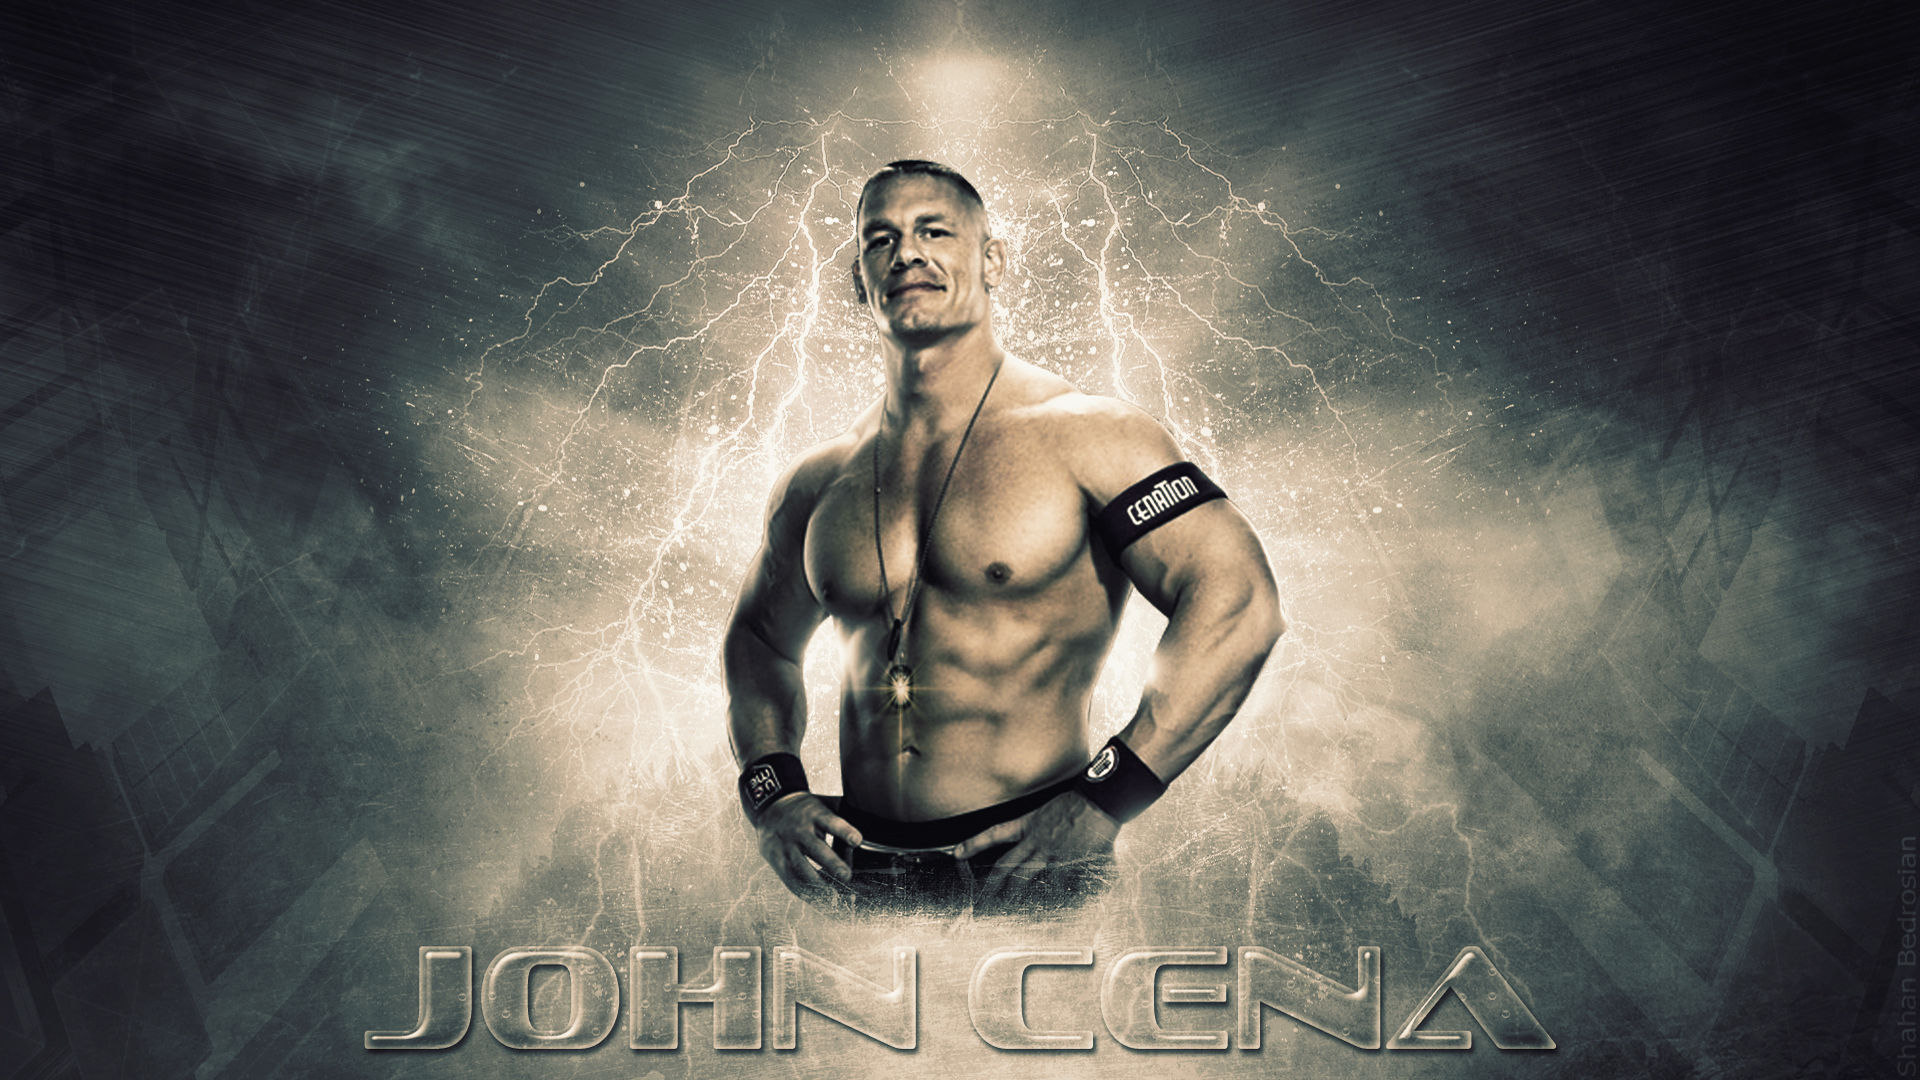 Image John Cena Wallpaper And Stock Photos